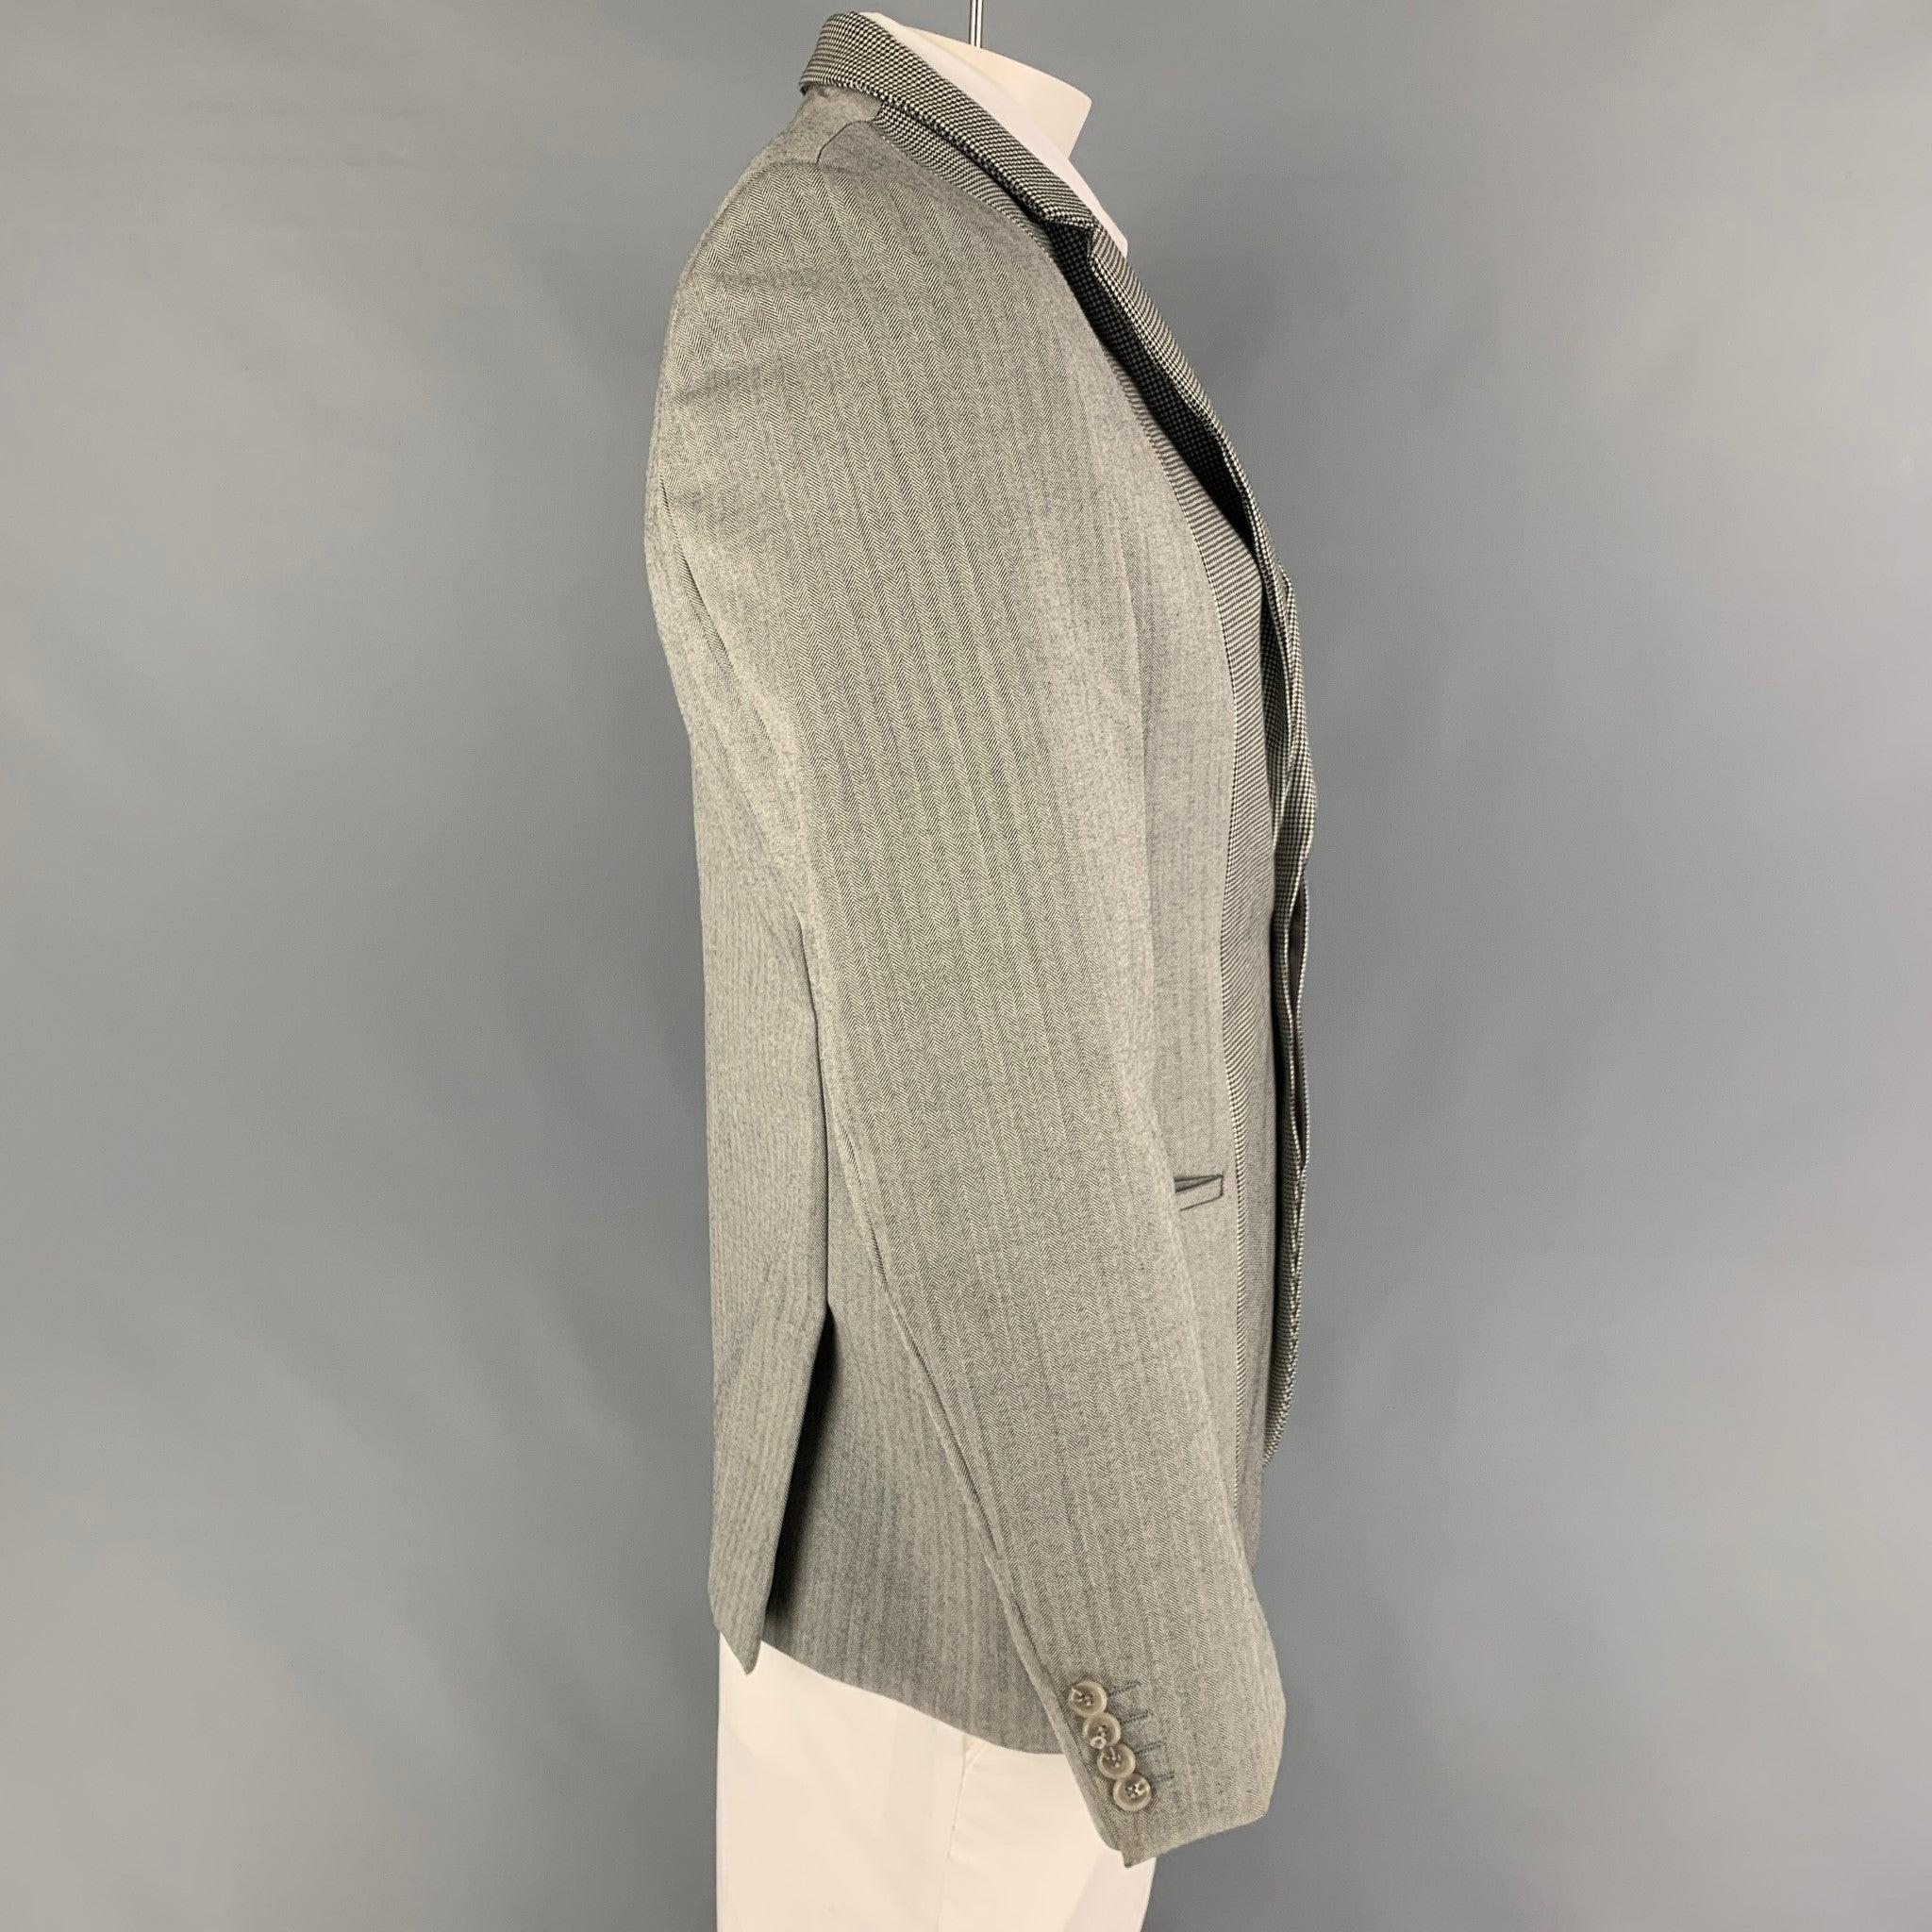 Manteau de sport CALVIN COLLECTION en laine grise et noire avec doublure intégrale, revers échancré, poches fendues, double fente au dos et double boutonnage caché.
Très bien
Etat d'occasion. 

Marqué :   50/40 

Mesures : 
 
Épaule : 18 pouces 